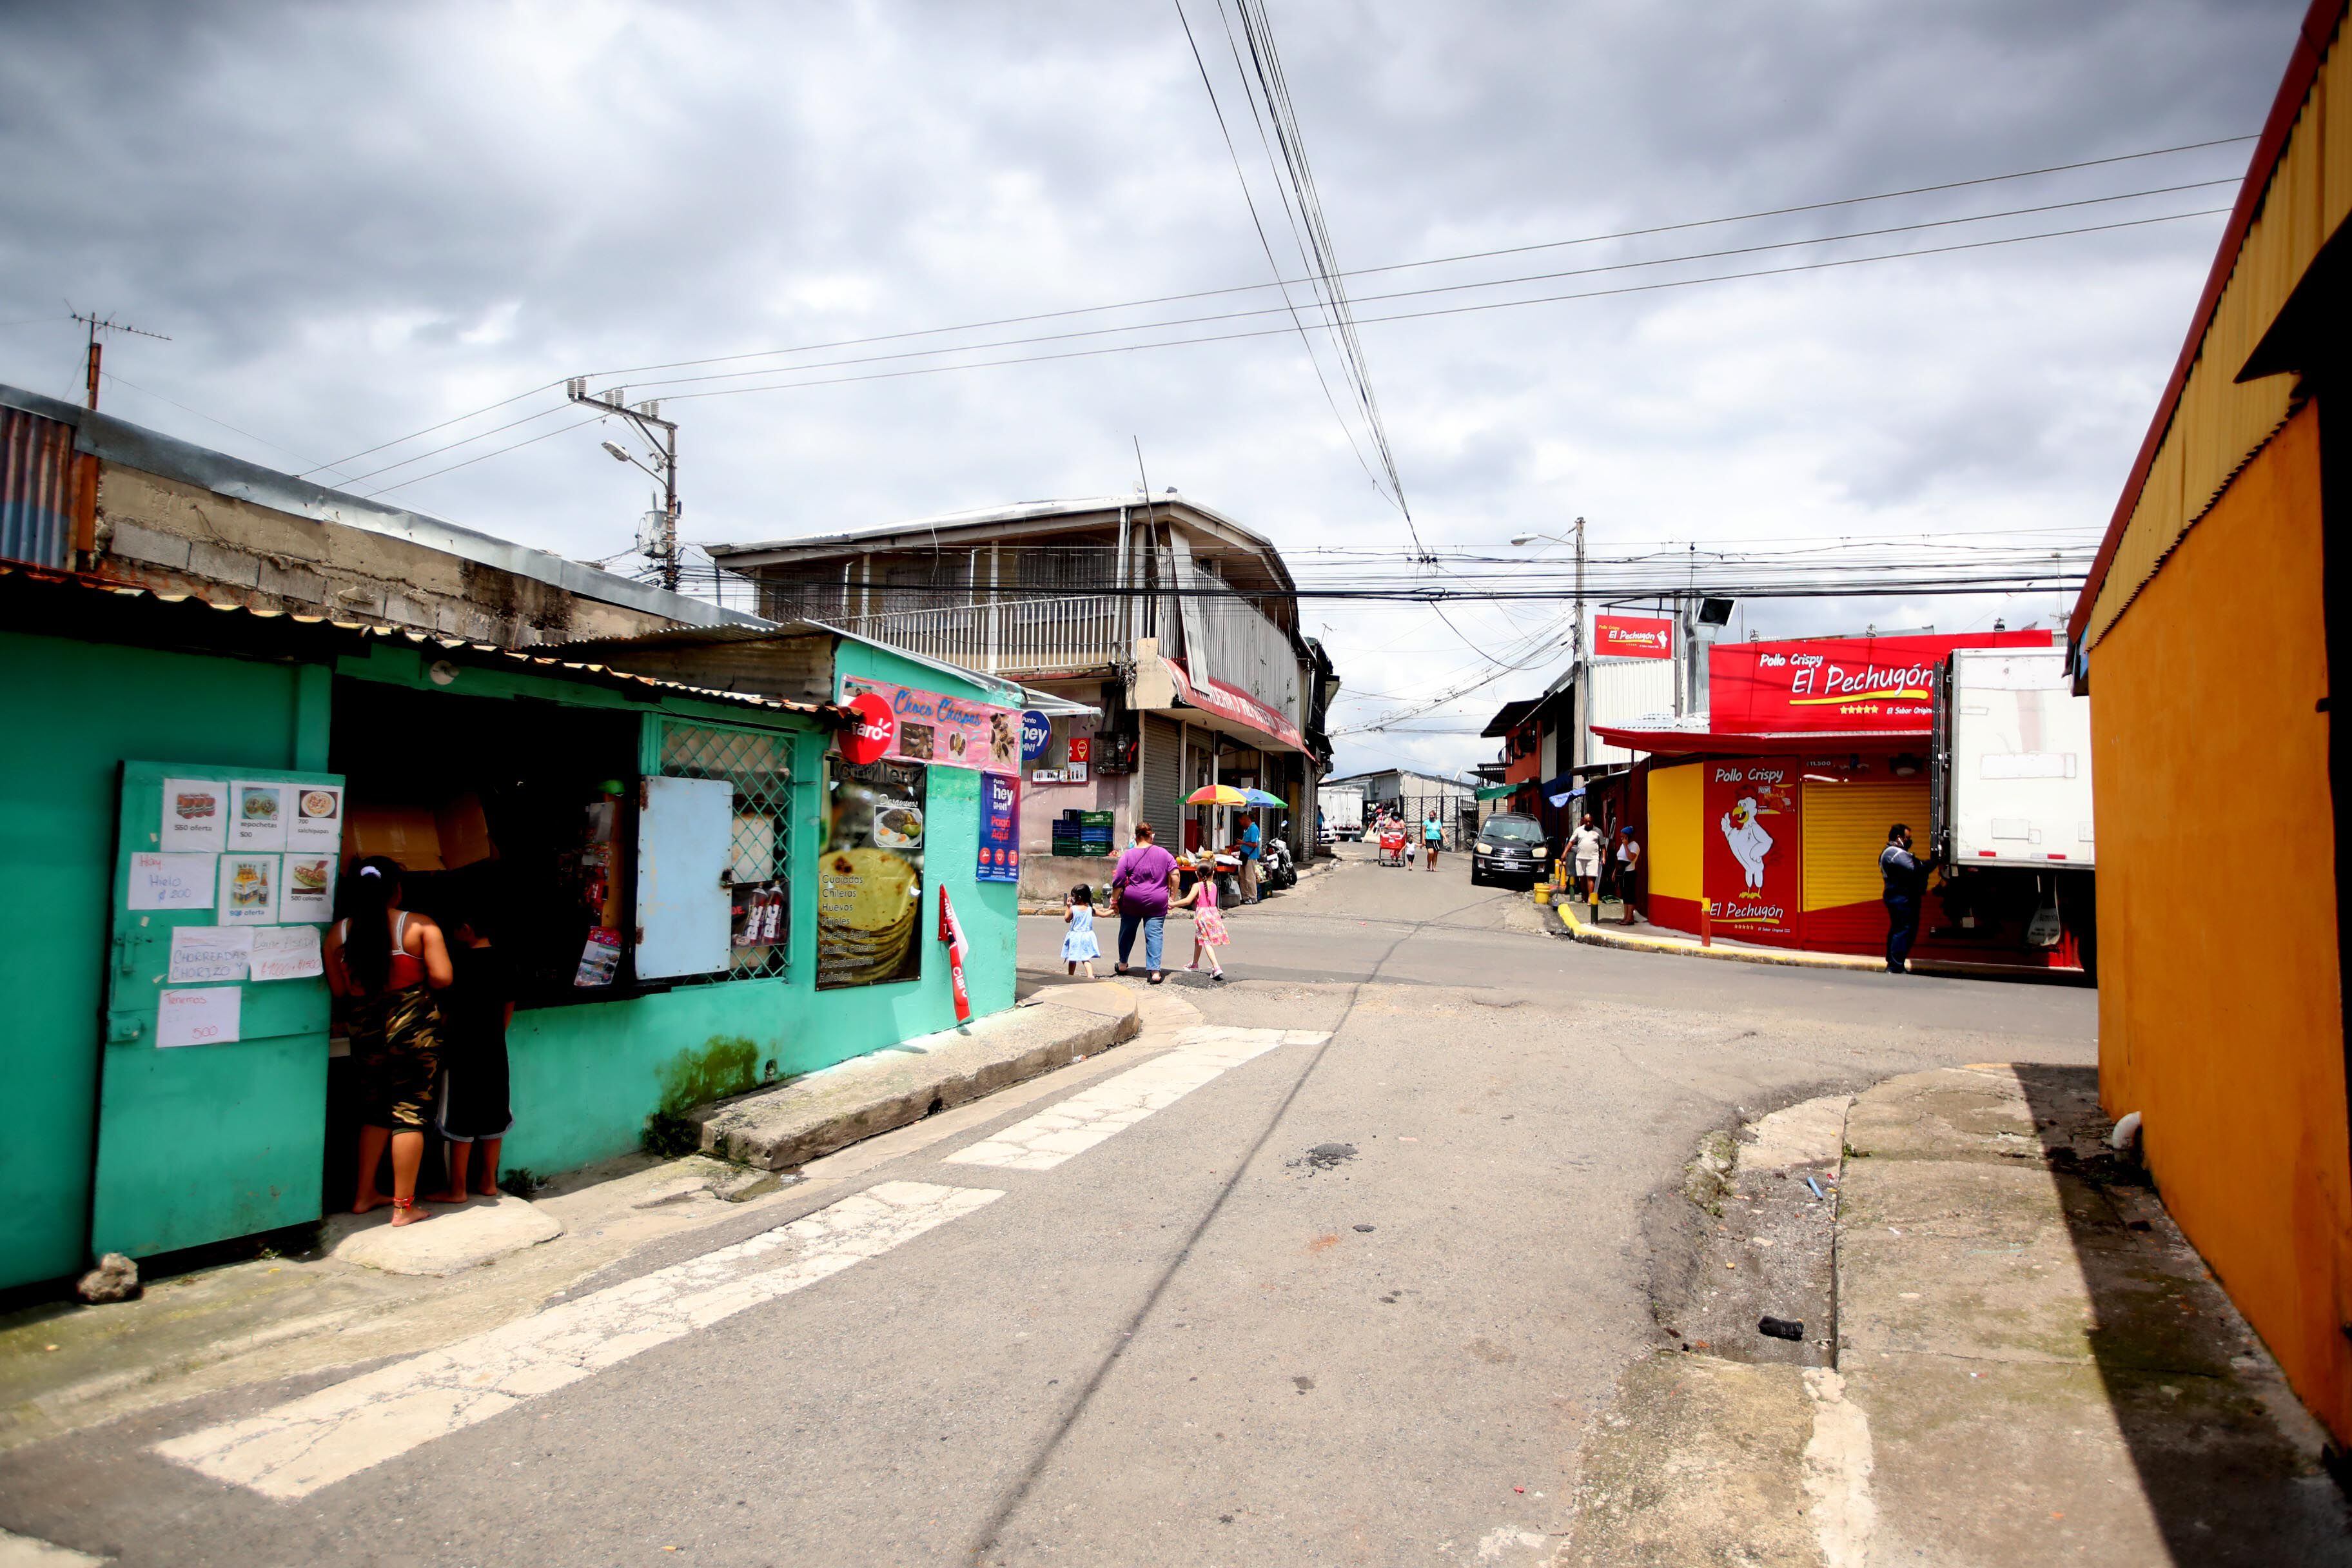 La alta densidad poblacional en caseríos como La Carpio, en La Uruca, justifican la fumigación para eliminar los criaderos del zancudo que transmite el dengue.